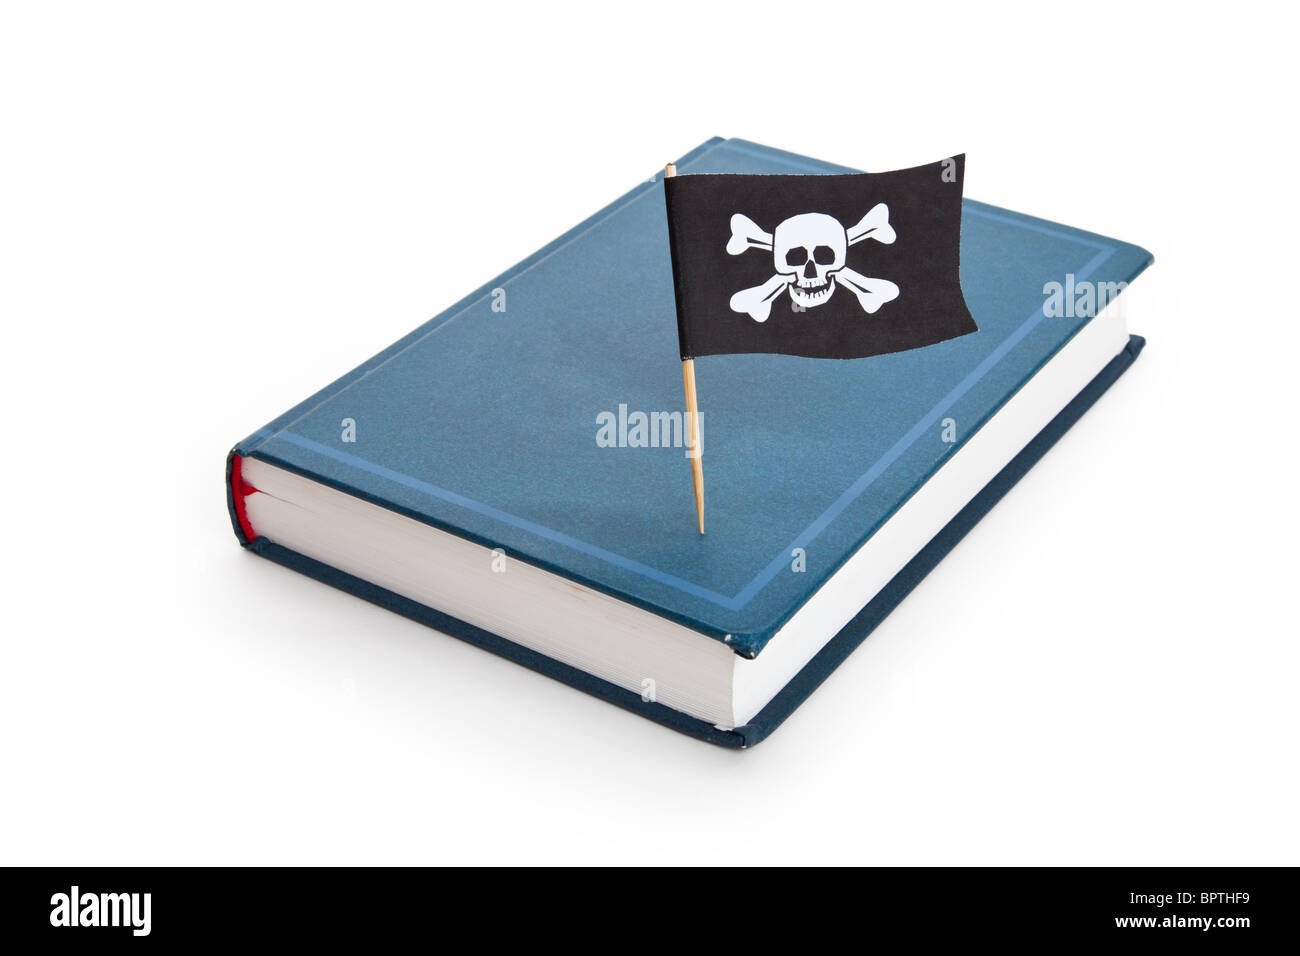 Drapeau pirate et livre, concept de piraterie, mauvais livre Banque D'Images